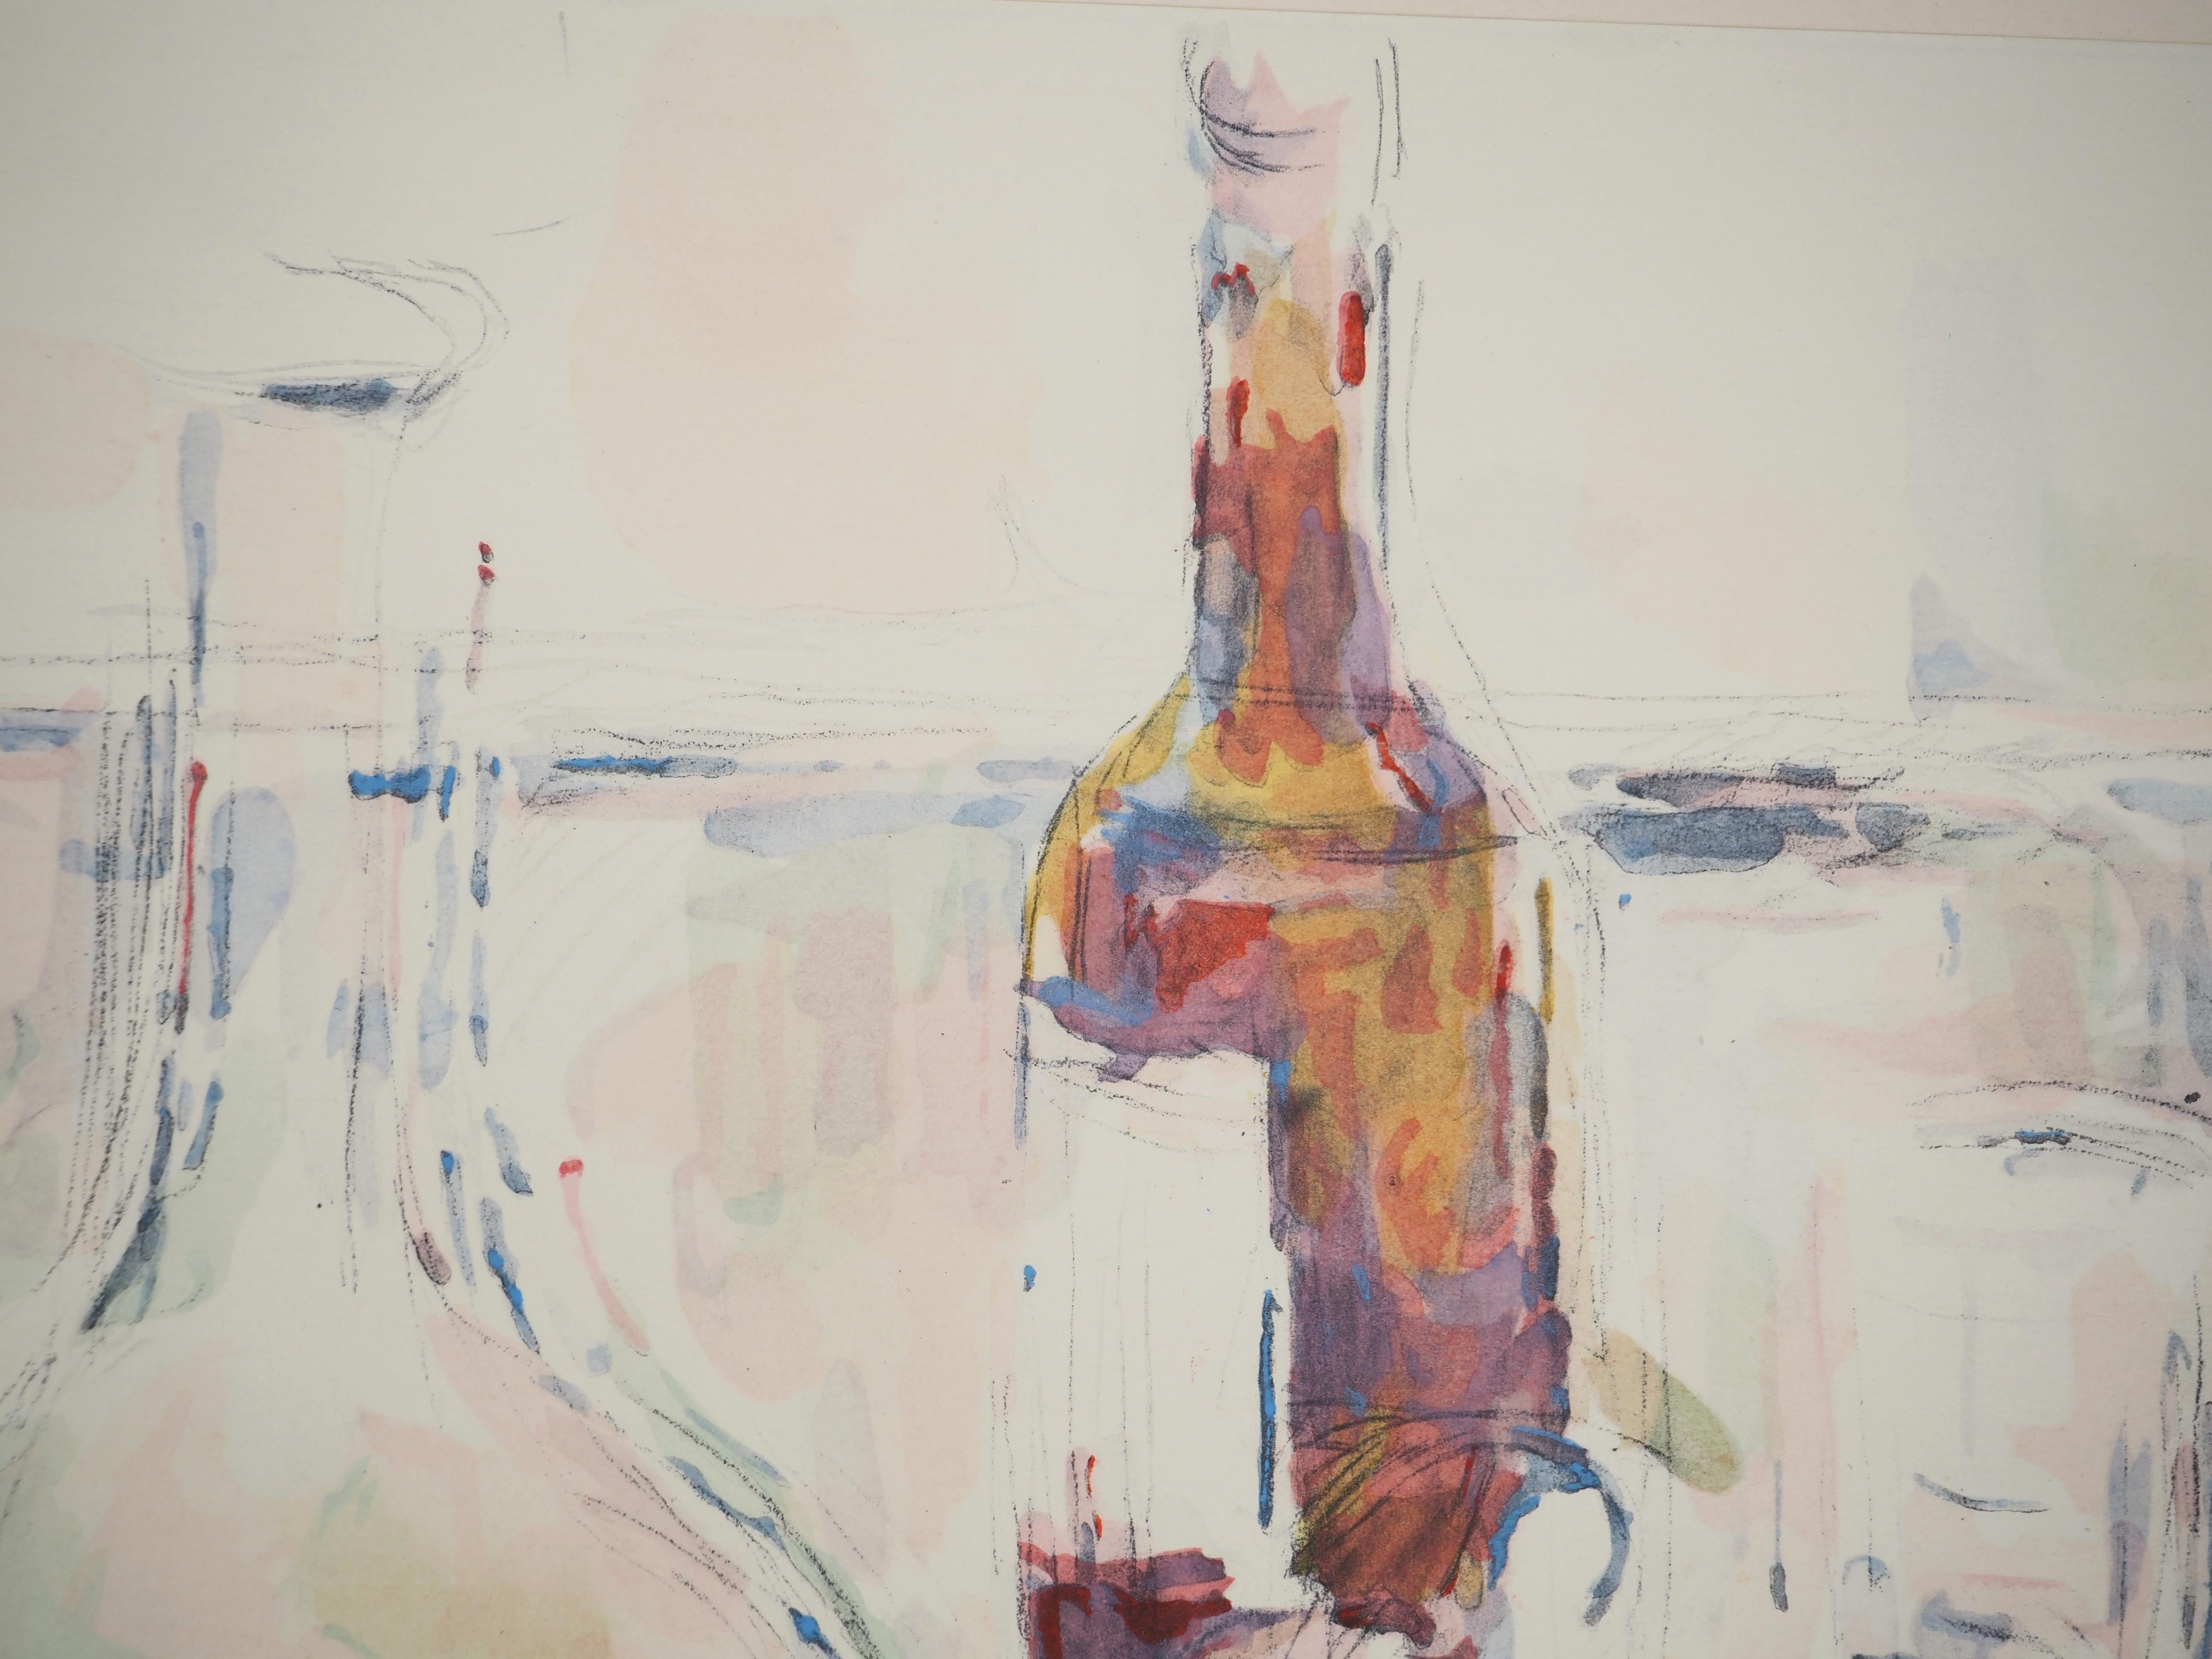 Paul Cezanne
Nature morte, fruits et vin, 1971

Lithographie et pochoir (atelier Jacomet)
Non signé
Numéroté / 225
Sur papier appliqué sur vélin d'Arches 41.5 x 53.5 cm (c. 16.5 x 21 in)

INFORMATION : Cette lithographie fait partie du portfolio